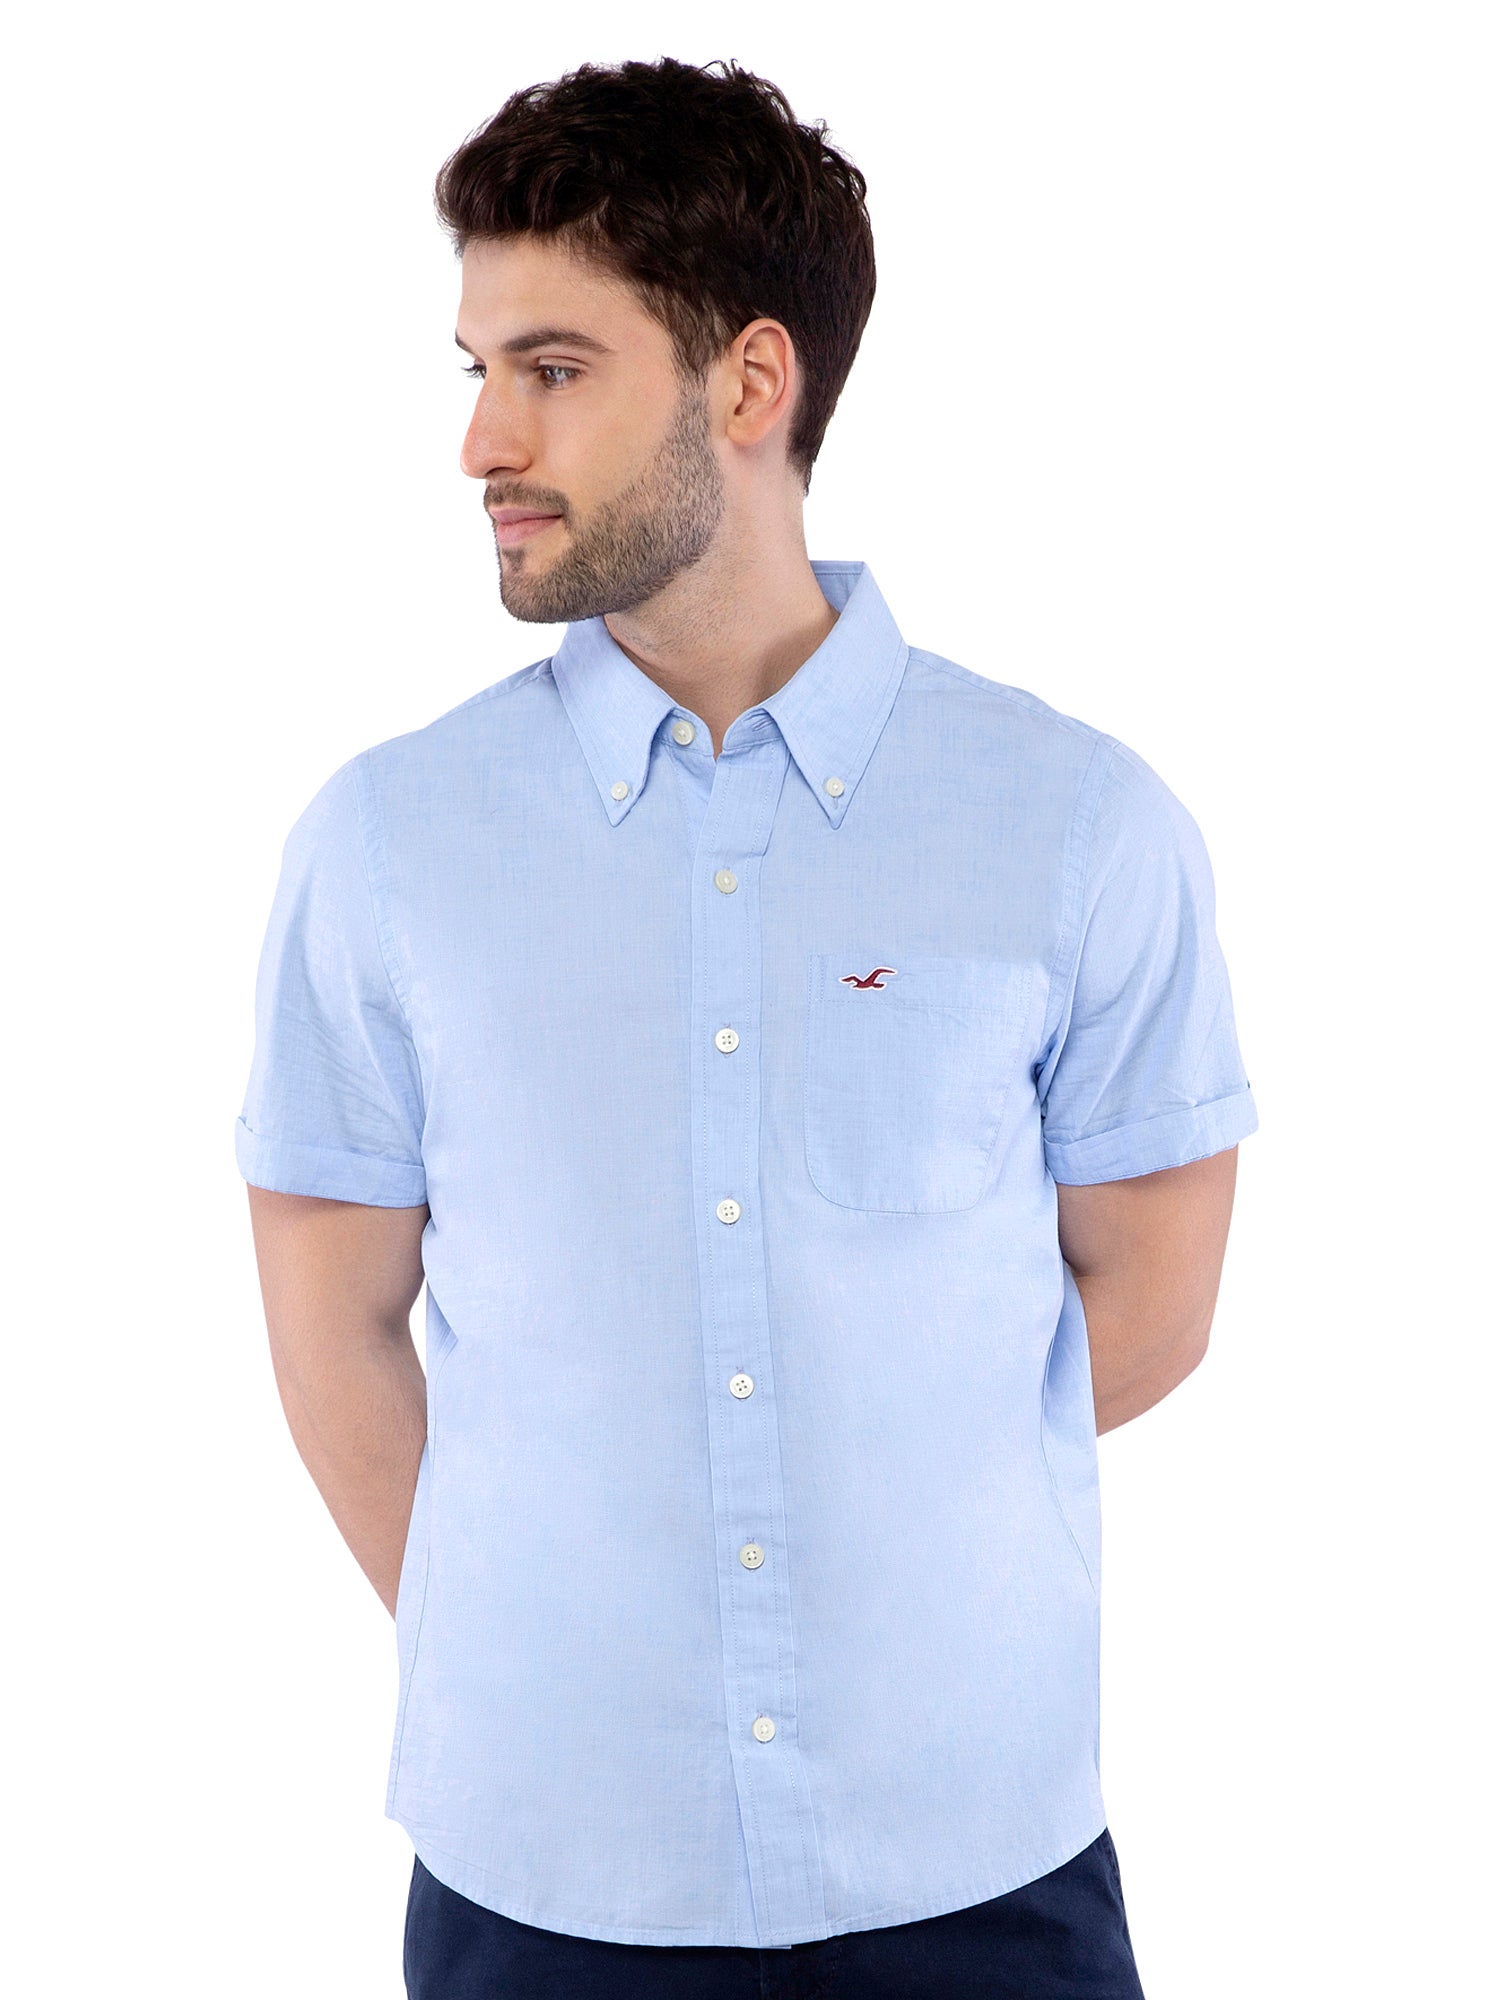 Hollister striped button through shirt in light blue